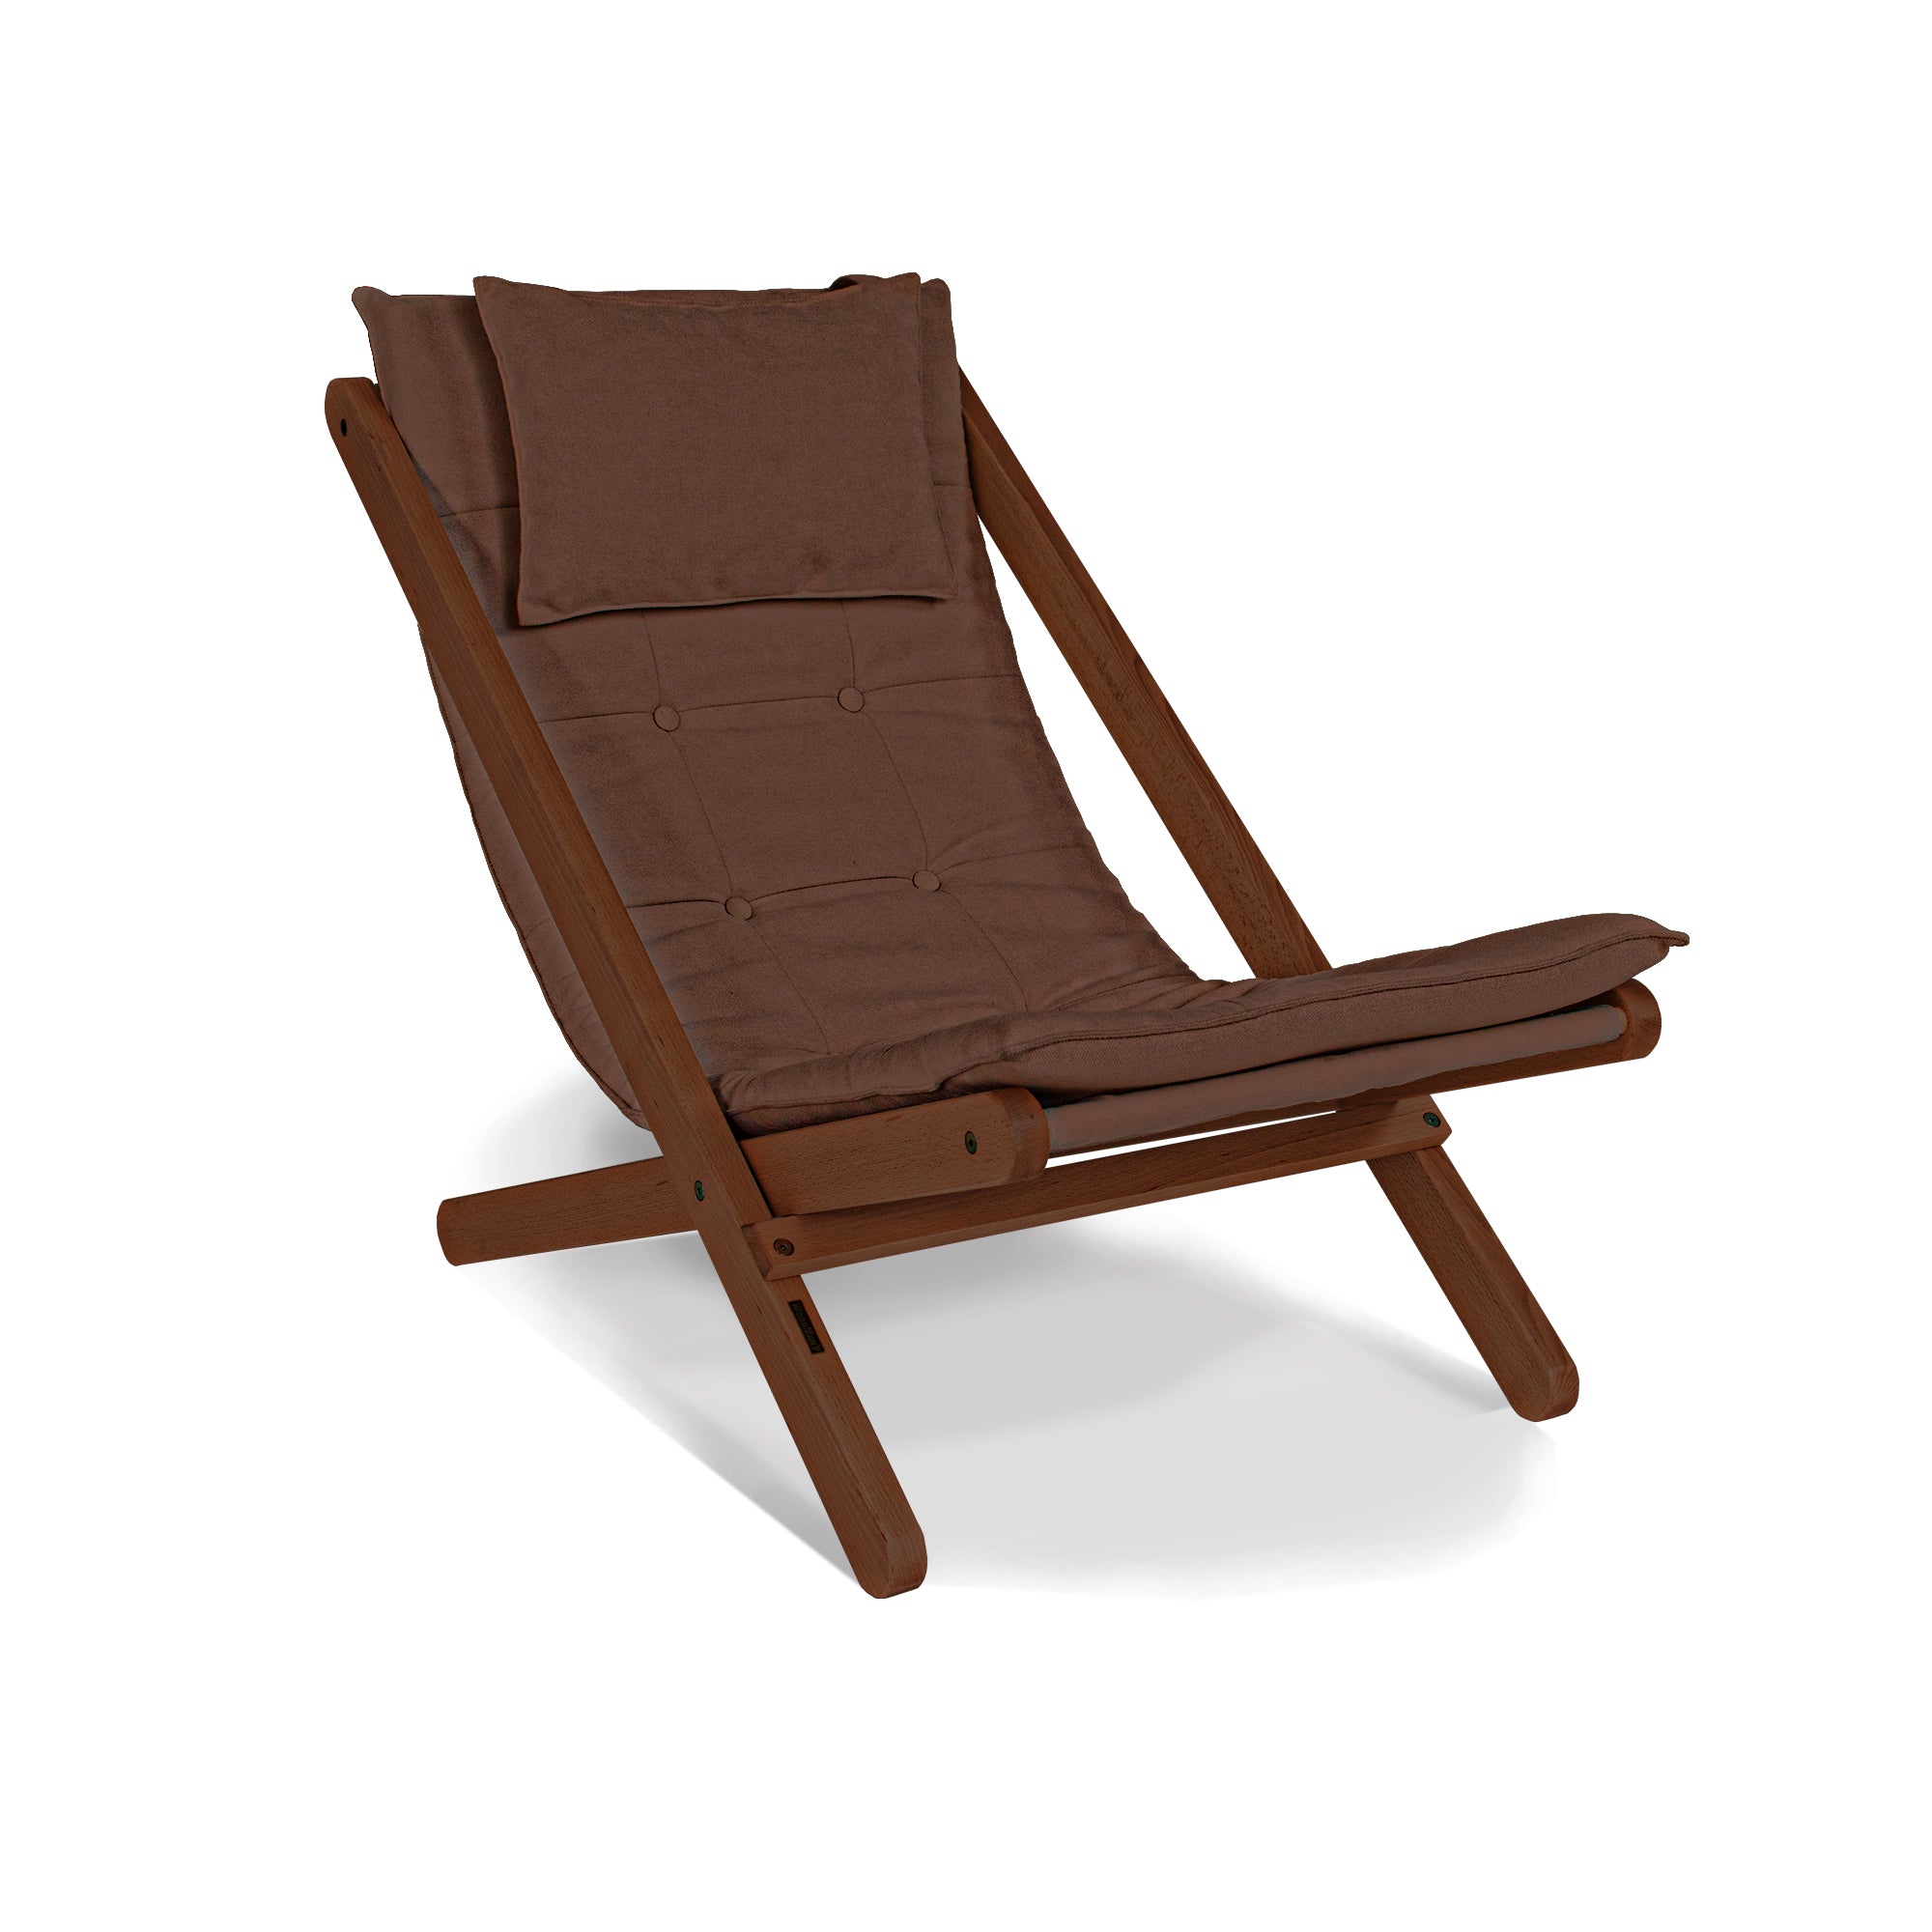 ALLEGRO Deckchair -walnut frame-brown fabric